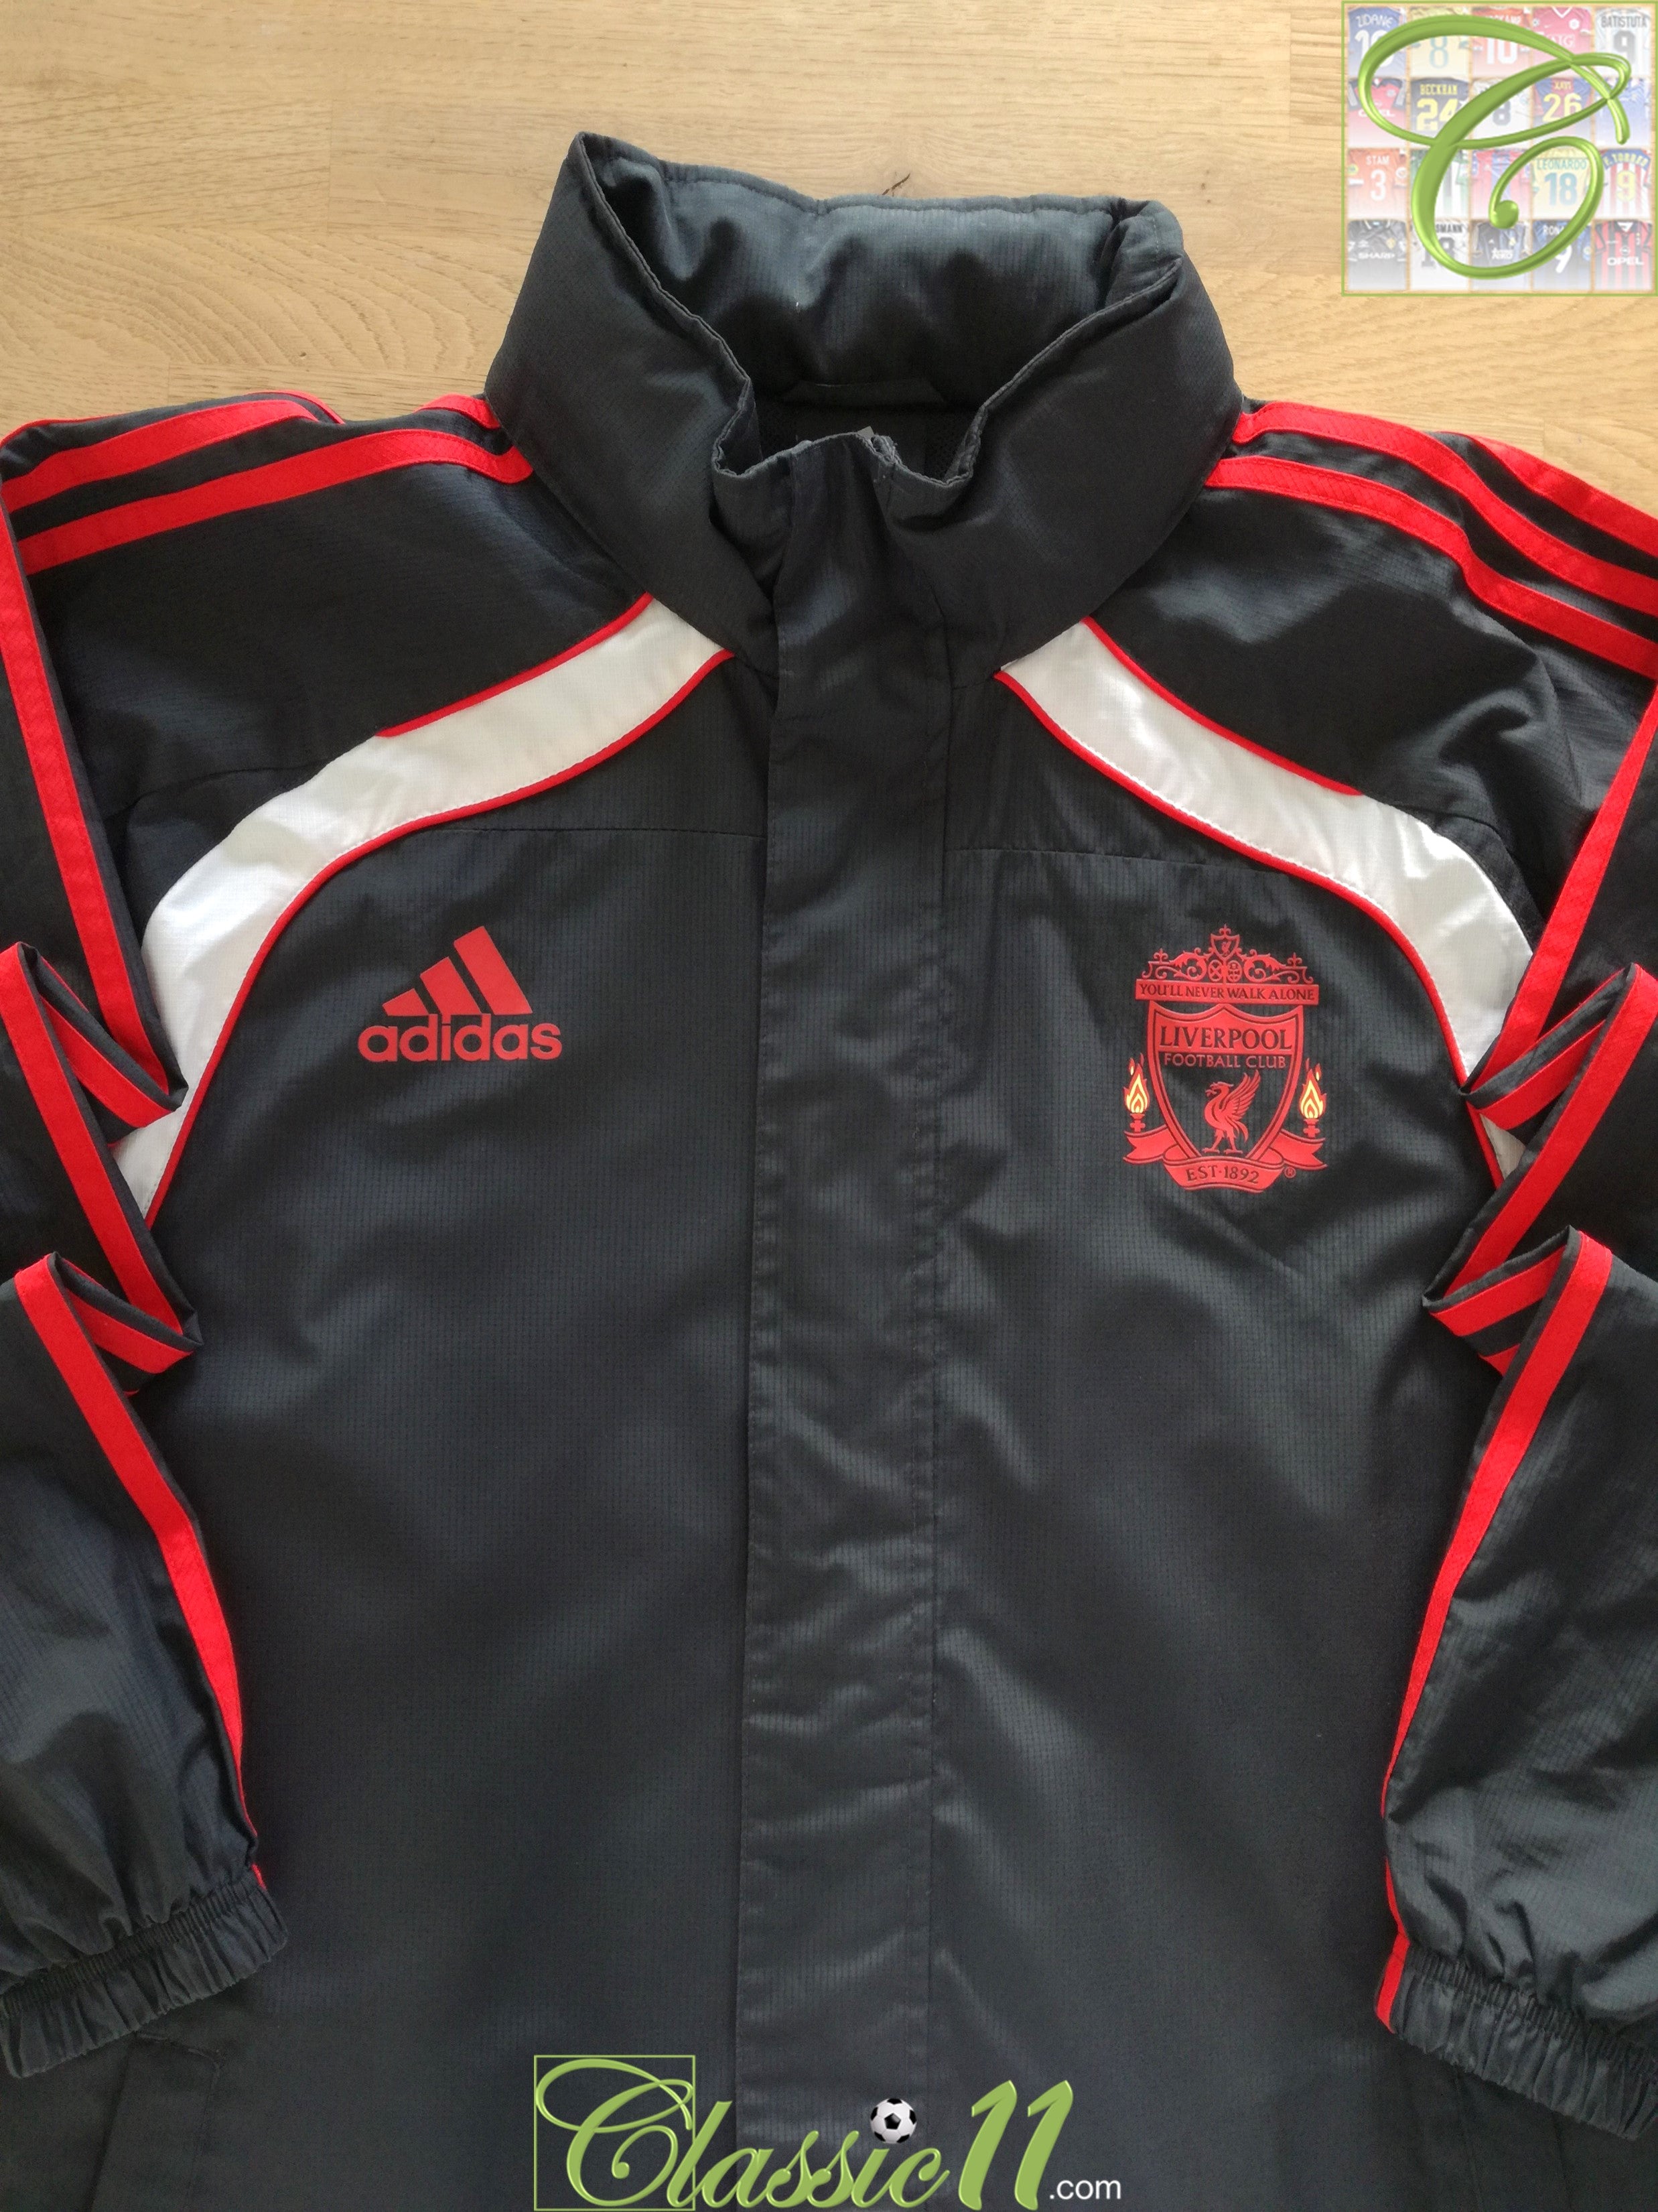 Adidas Liverpool 2010/2011 Training Jacket Vintage